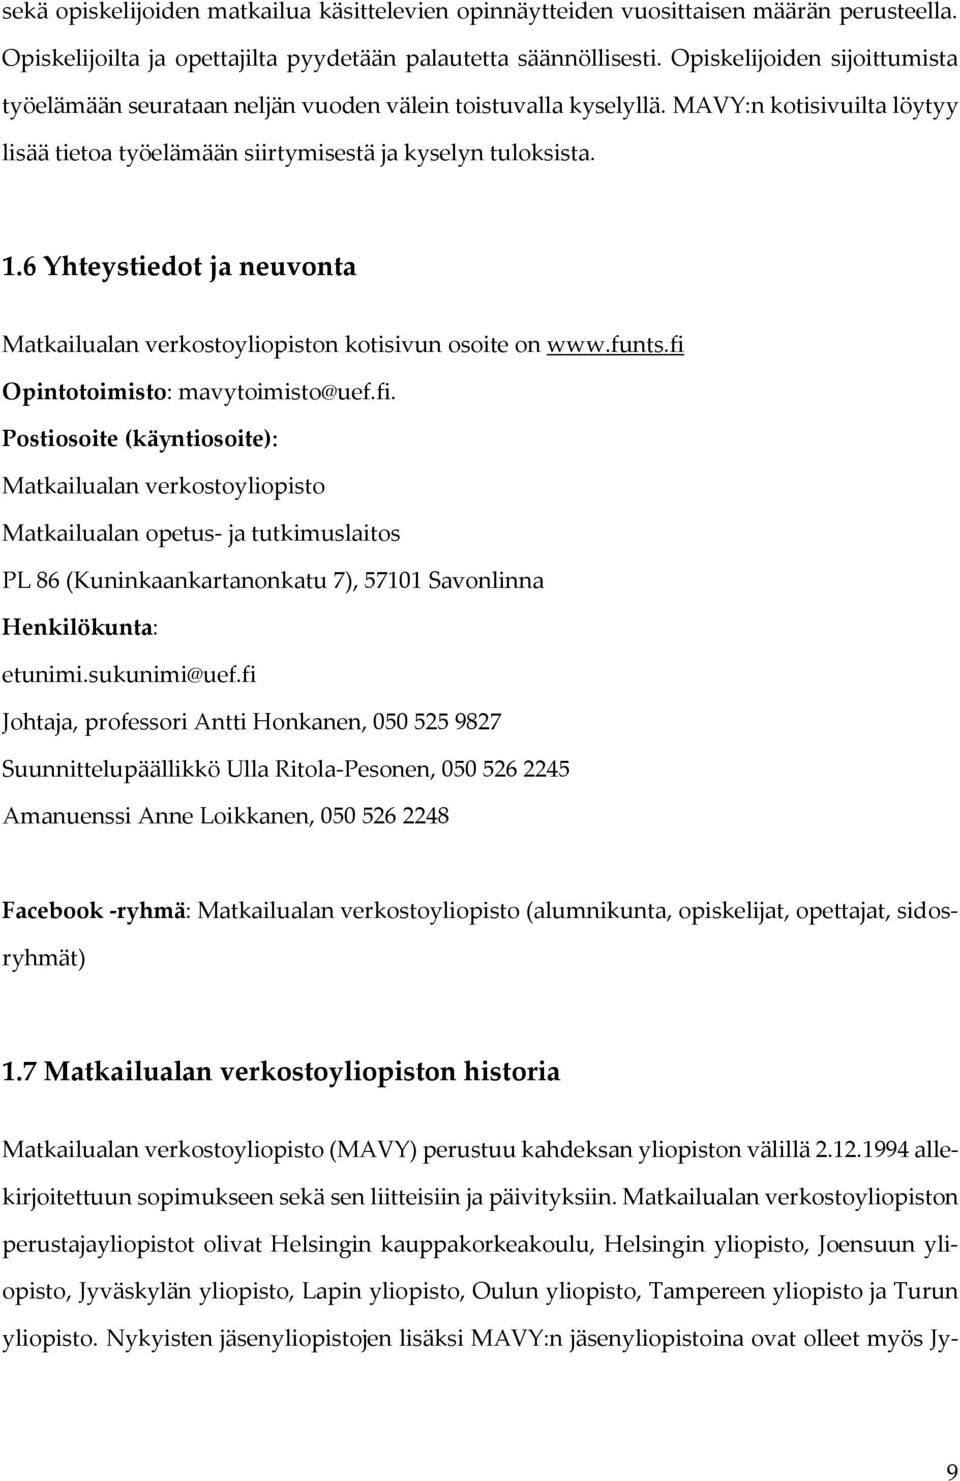 6 Yhteystiedot ja neuvonta Matkailualan verkostoyliopiston kotisivun osoite on www.funts.fi 